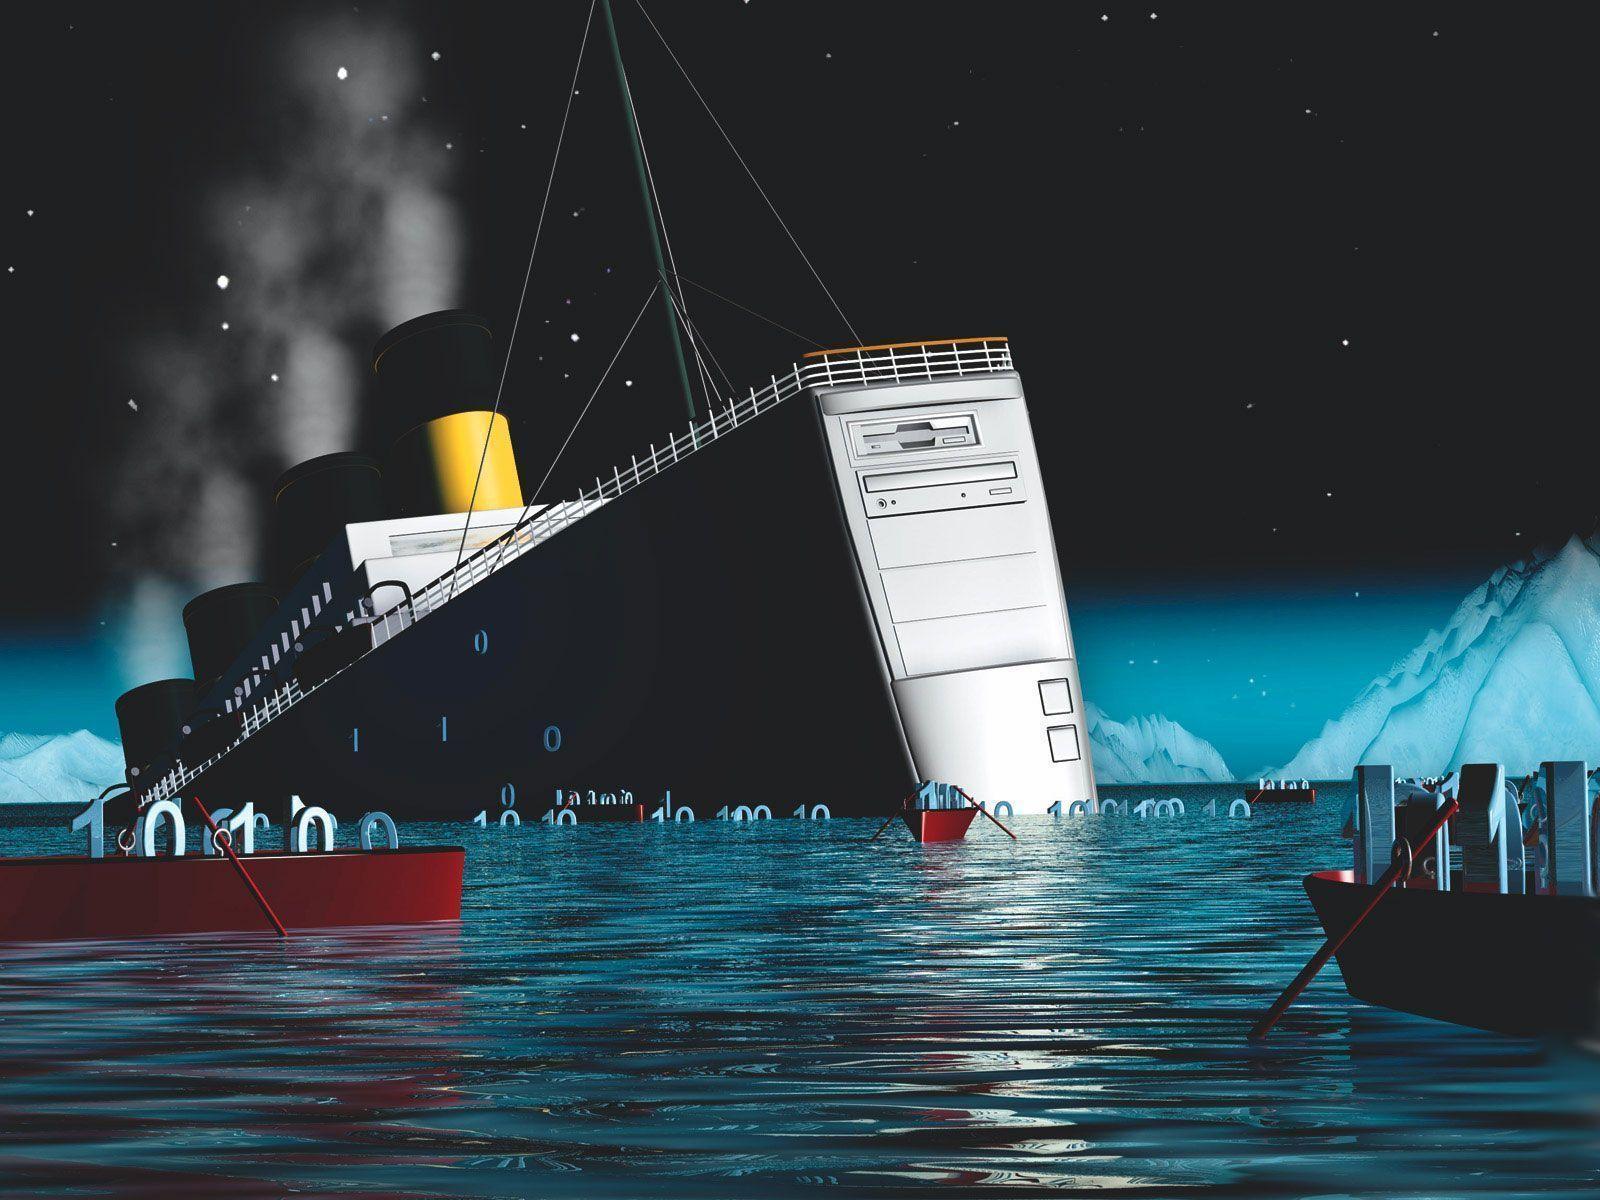 Titanic Wallpaper For Desktop